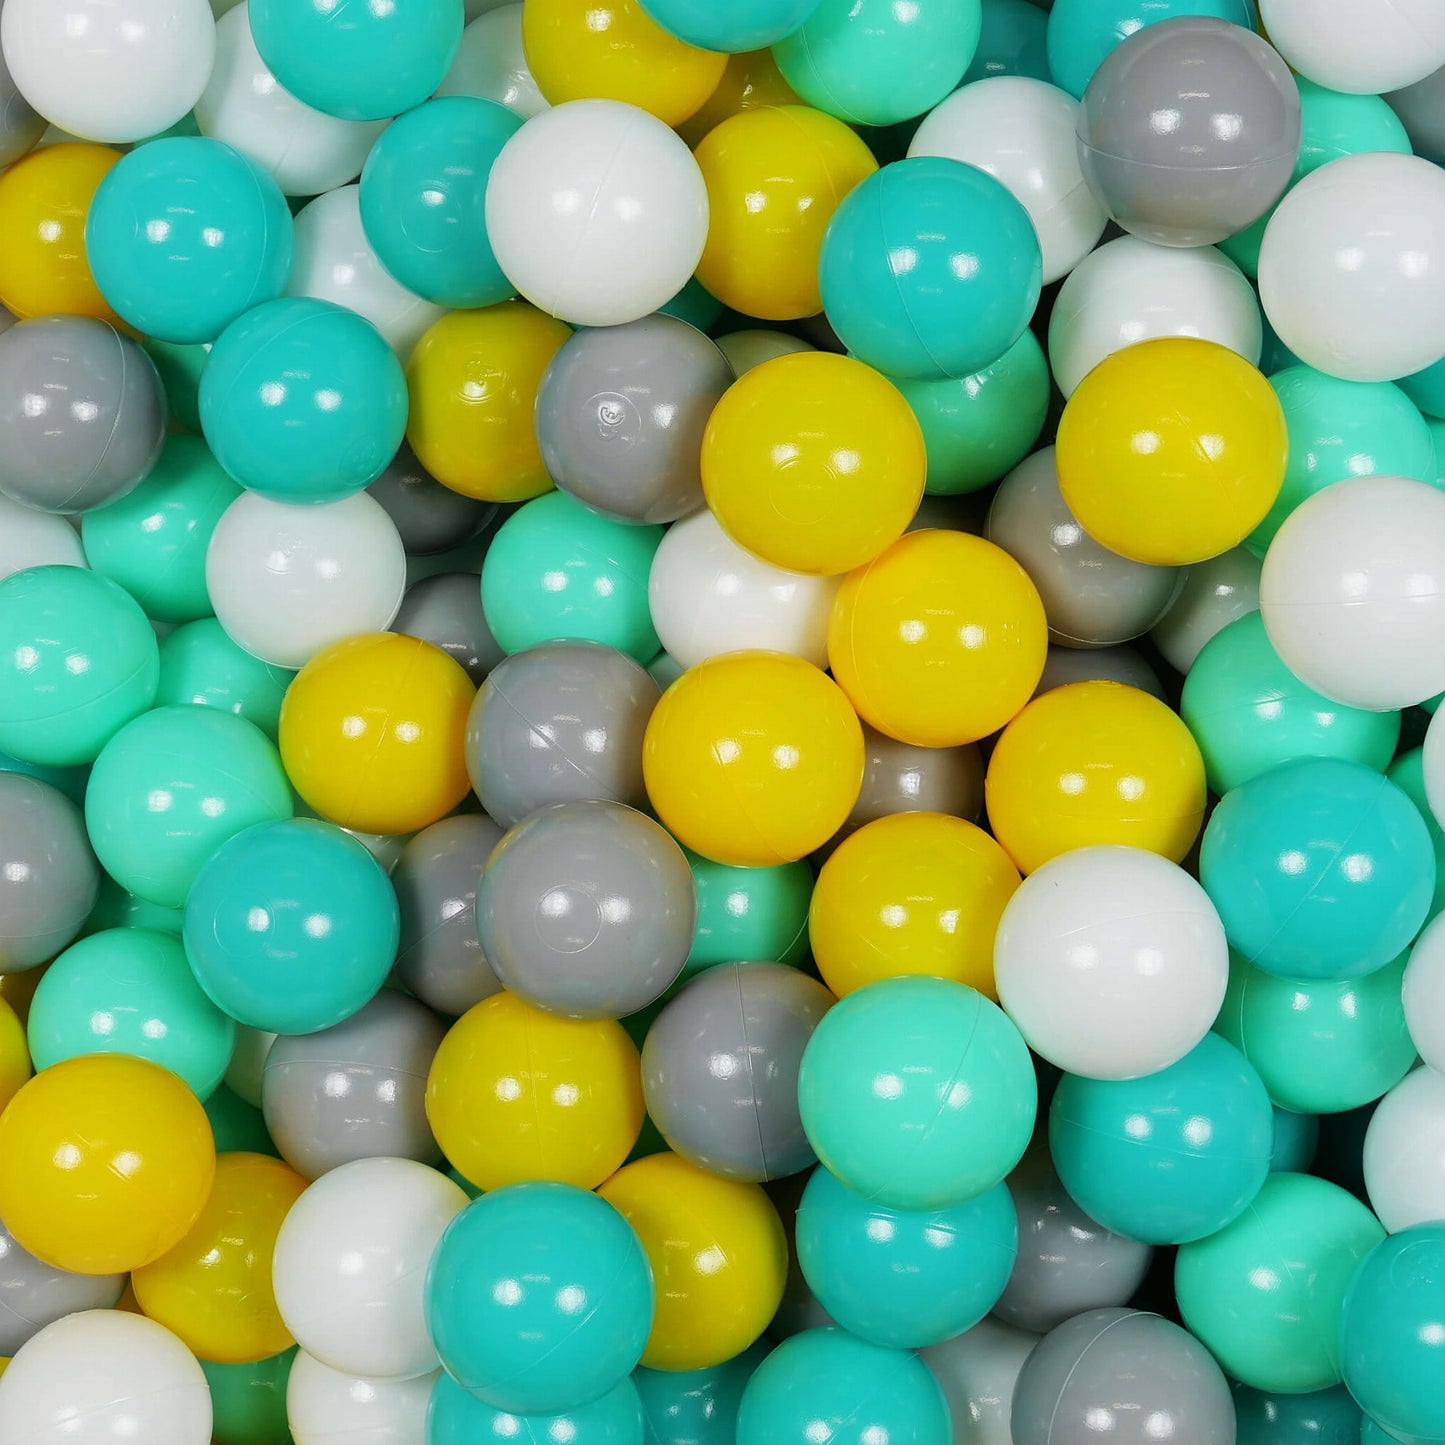 Balles de jeu ø7cm 500 pièces jaune, menthe, turquoise, blanc, gris